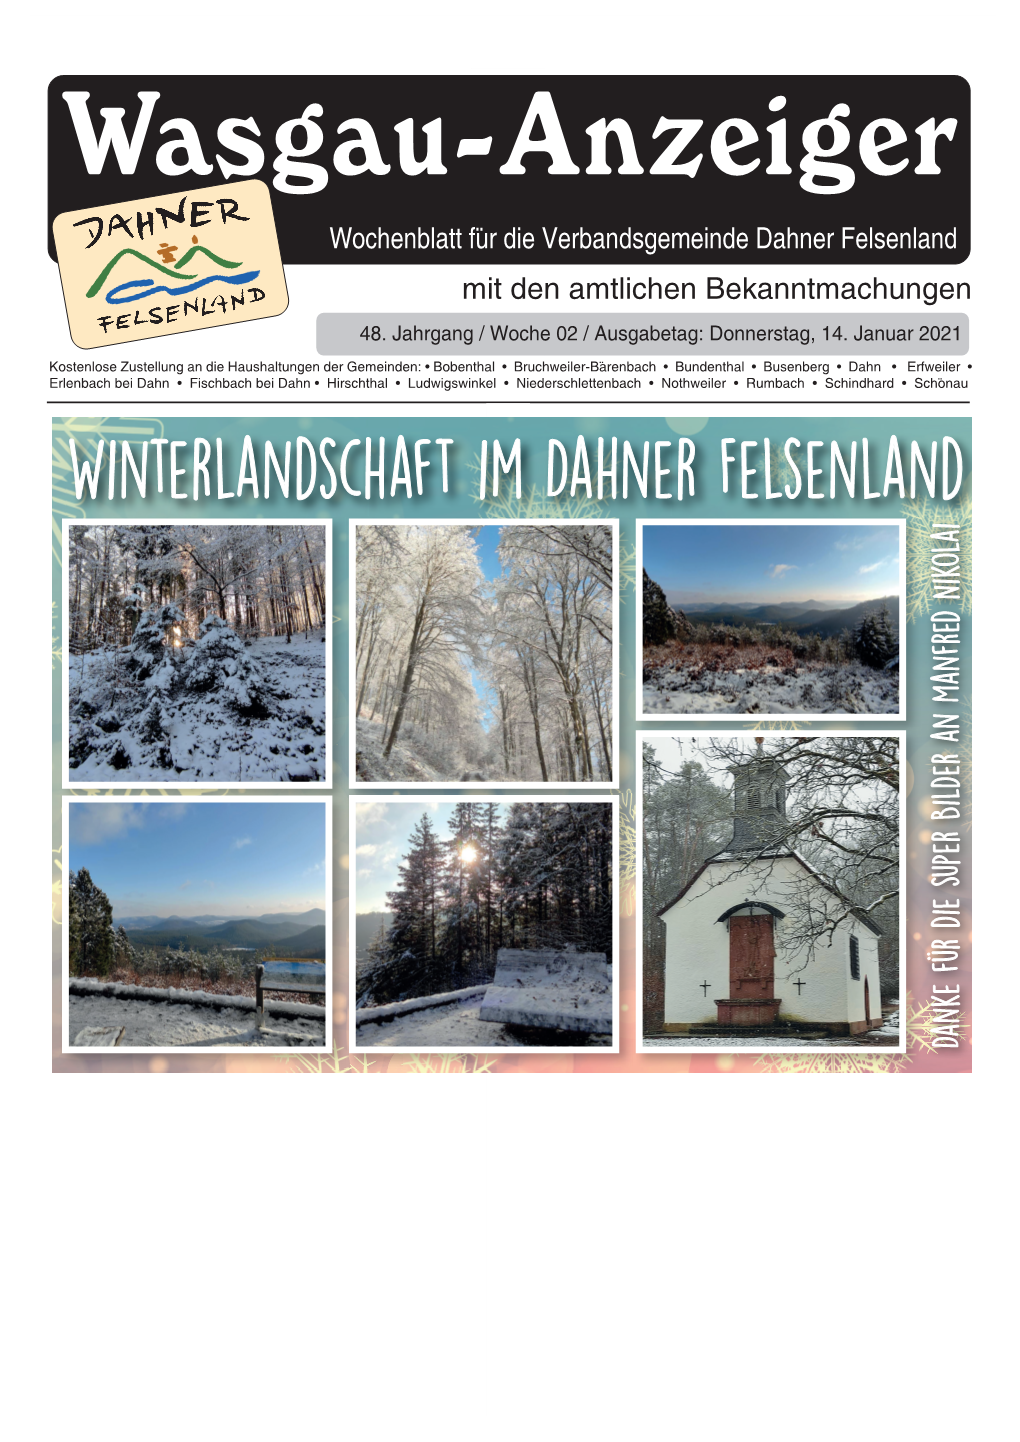 Wasgau-Anzeiger« 14. Januar 2021 1 Wasgau-Anzeiger Wochenblatt Für Die Verbandsgemeinde Dahner Felsenland Mit Den Amtlichen Bekanntmachungen 48